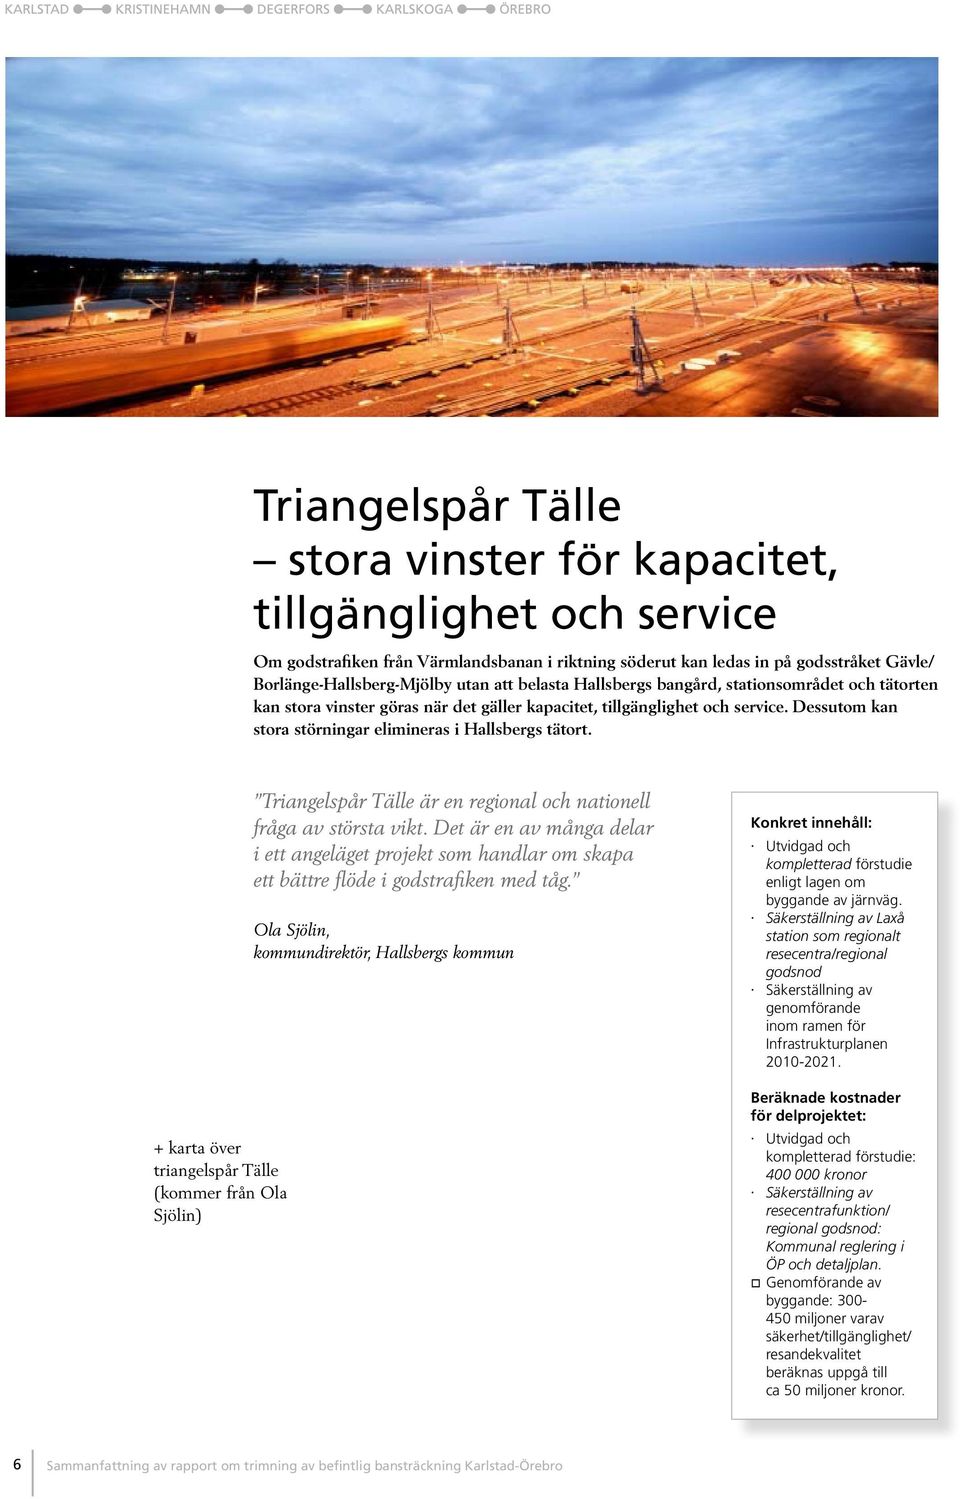 + karta över triangelspår Tälle (kommer från Ola Sjölin) Triangelspår Tälle är en regional och nationell fråga av största vikt.